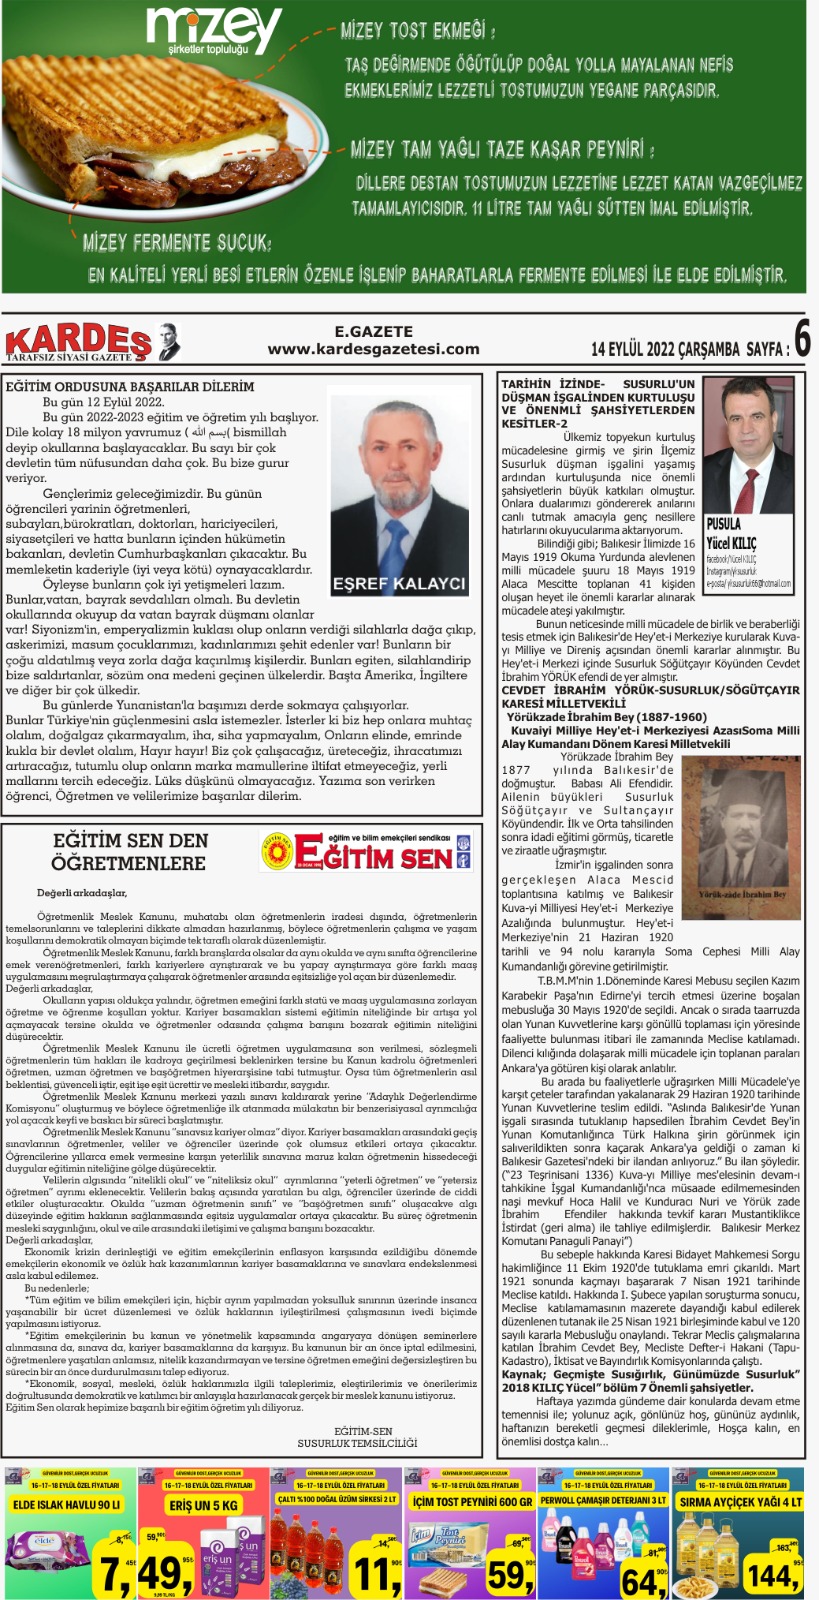 14.09.2022 Tarihli Kardeş Gazetesi Sayfa 6